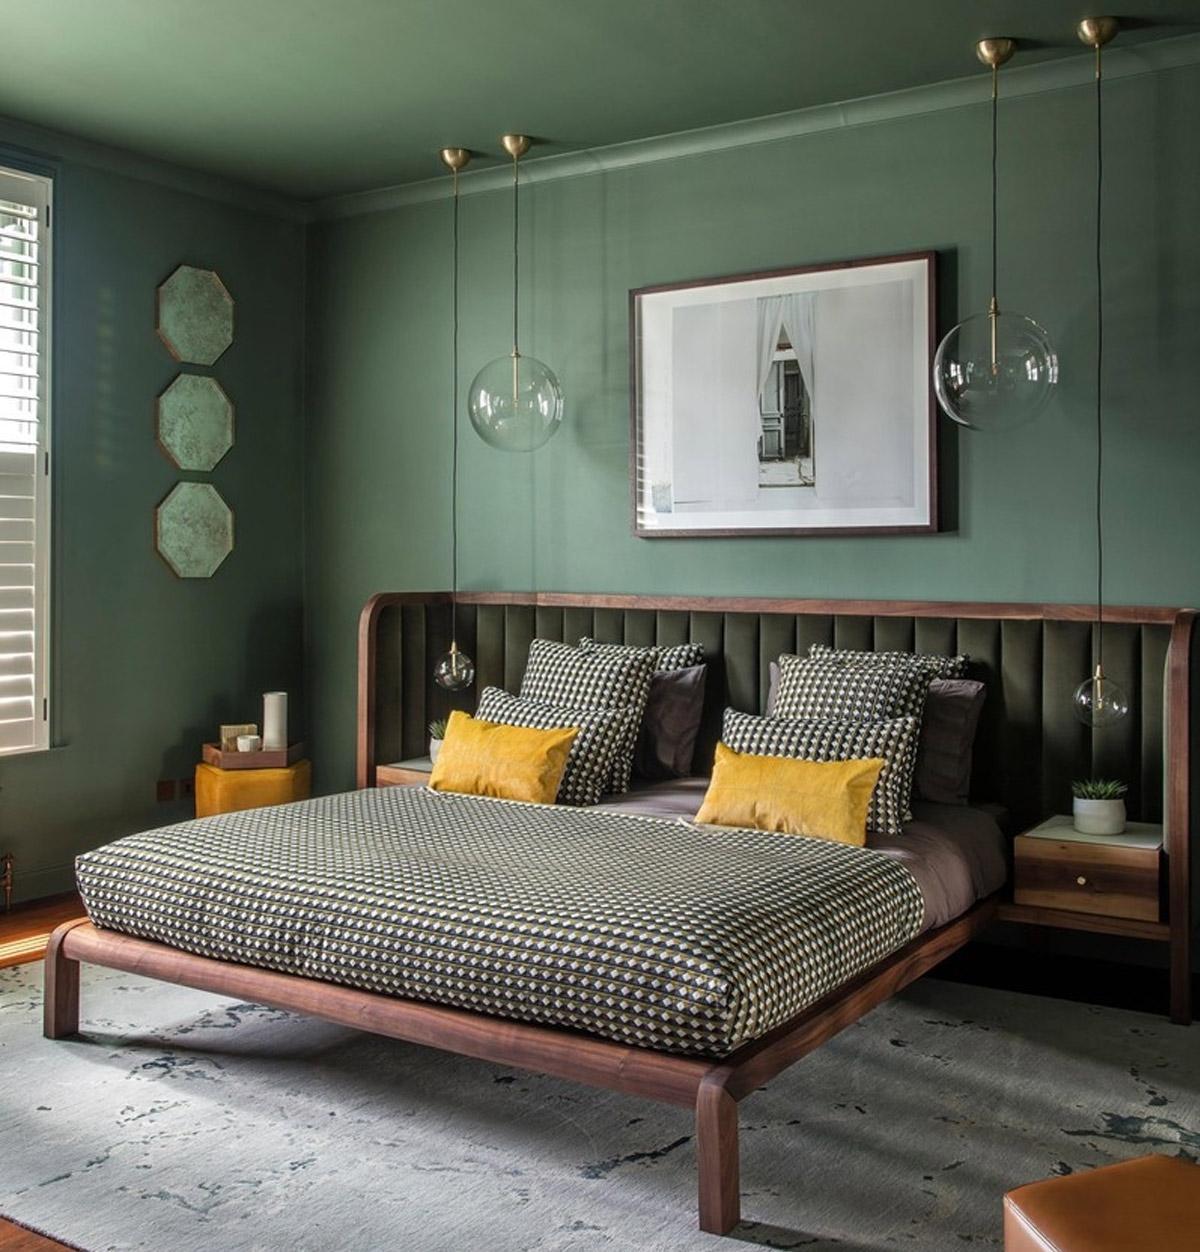 Trang trí nội thất phòng ngủ màu xanh lá cây cho cảm giác thư giãn